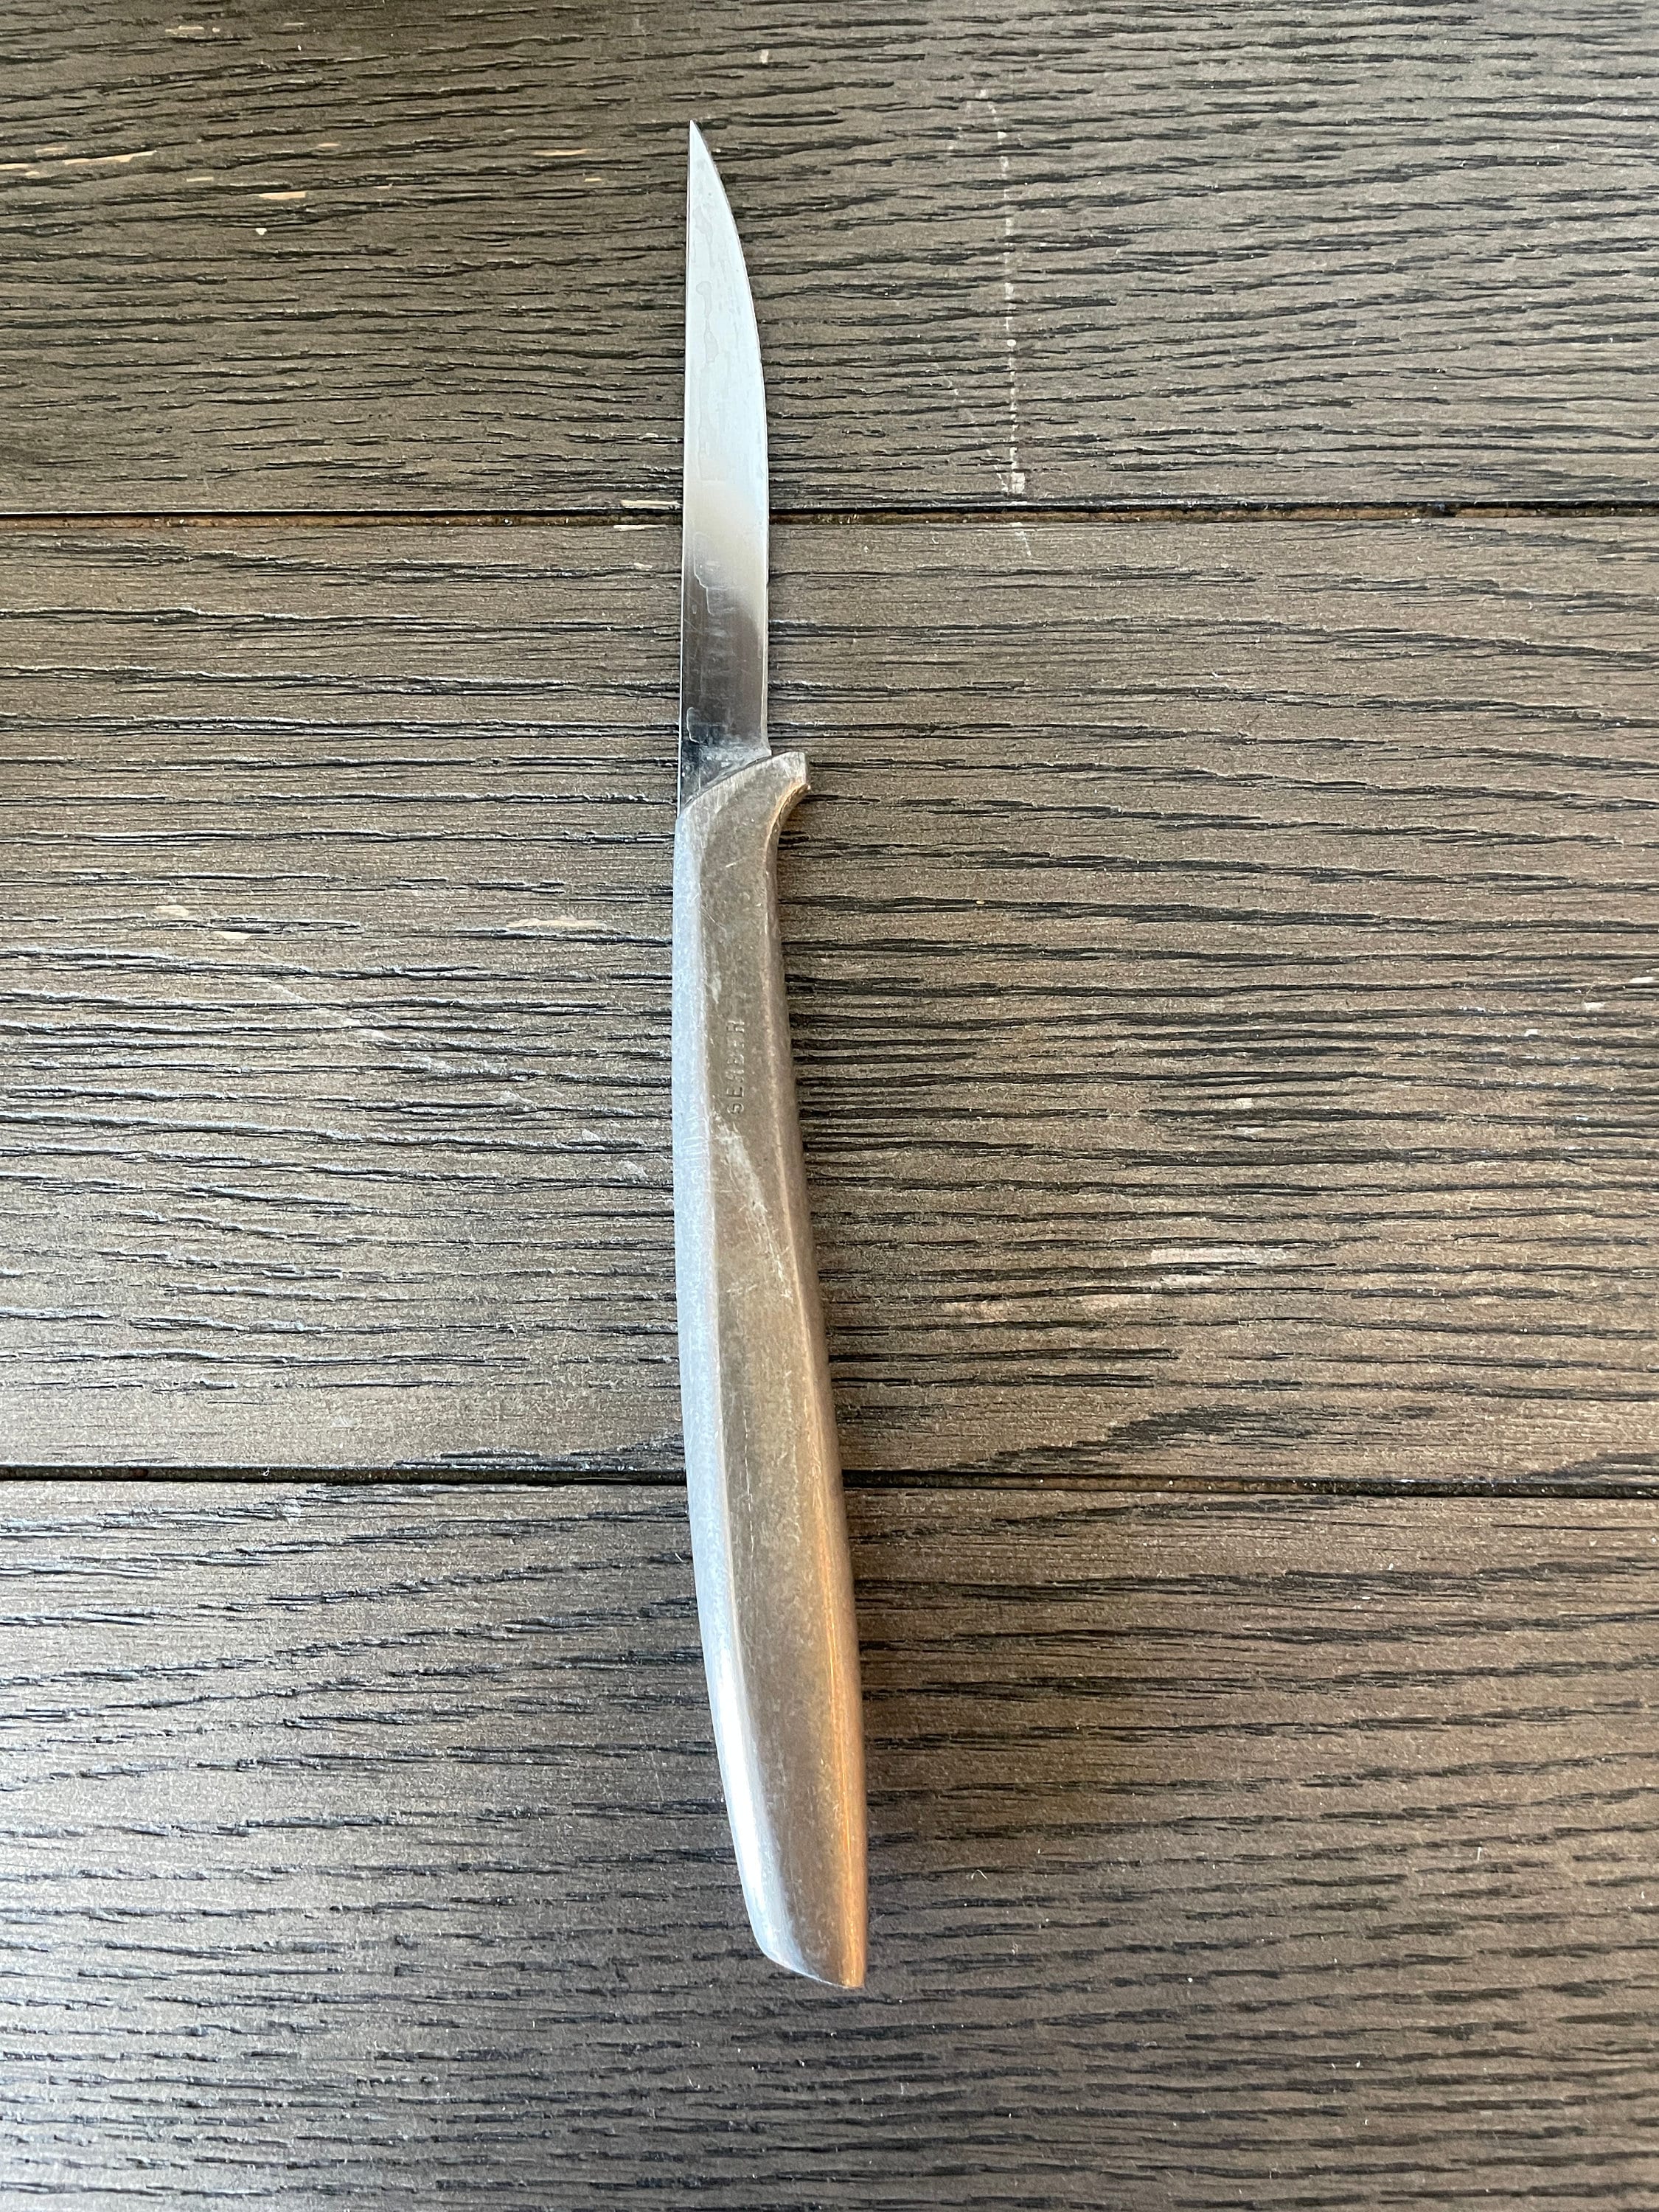 Vintage Gerber Knife - Etsy